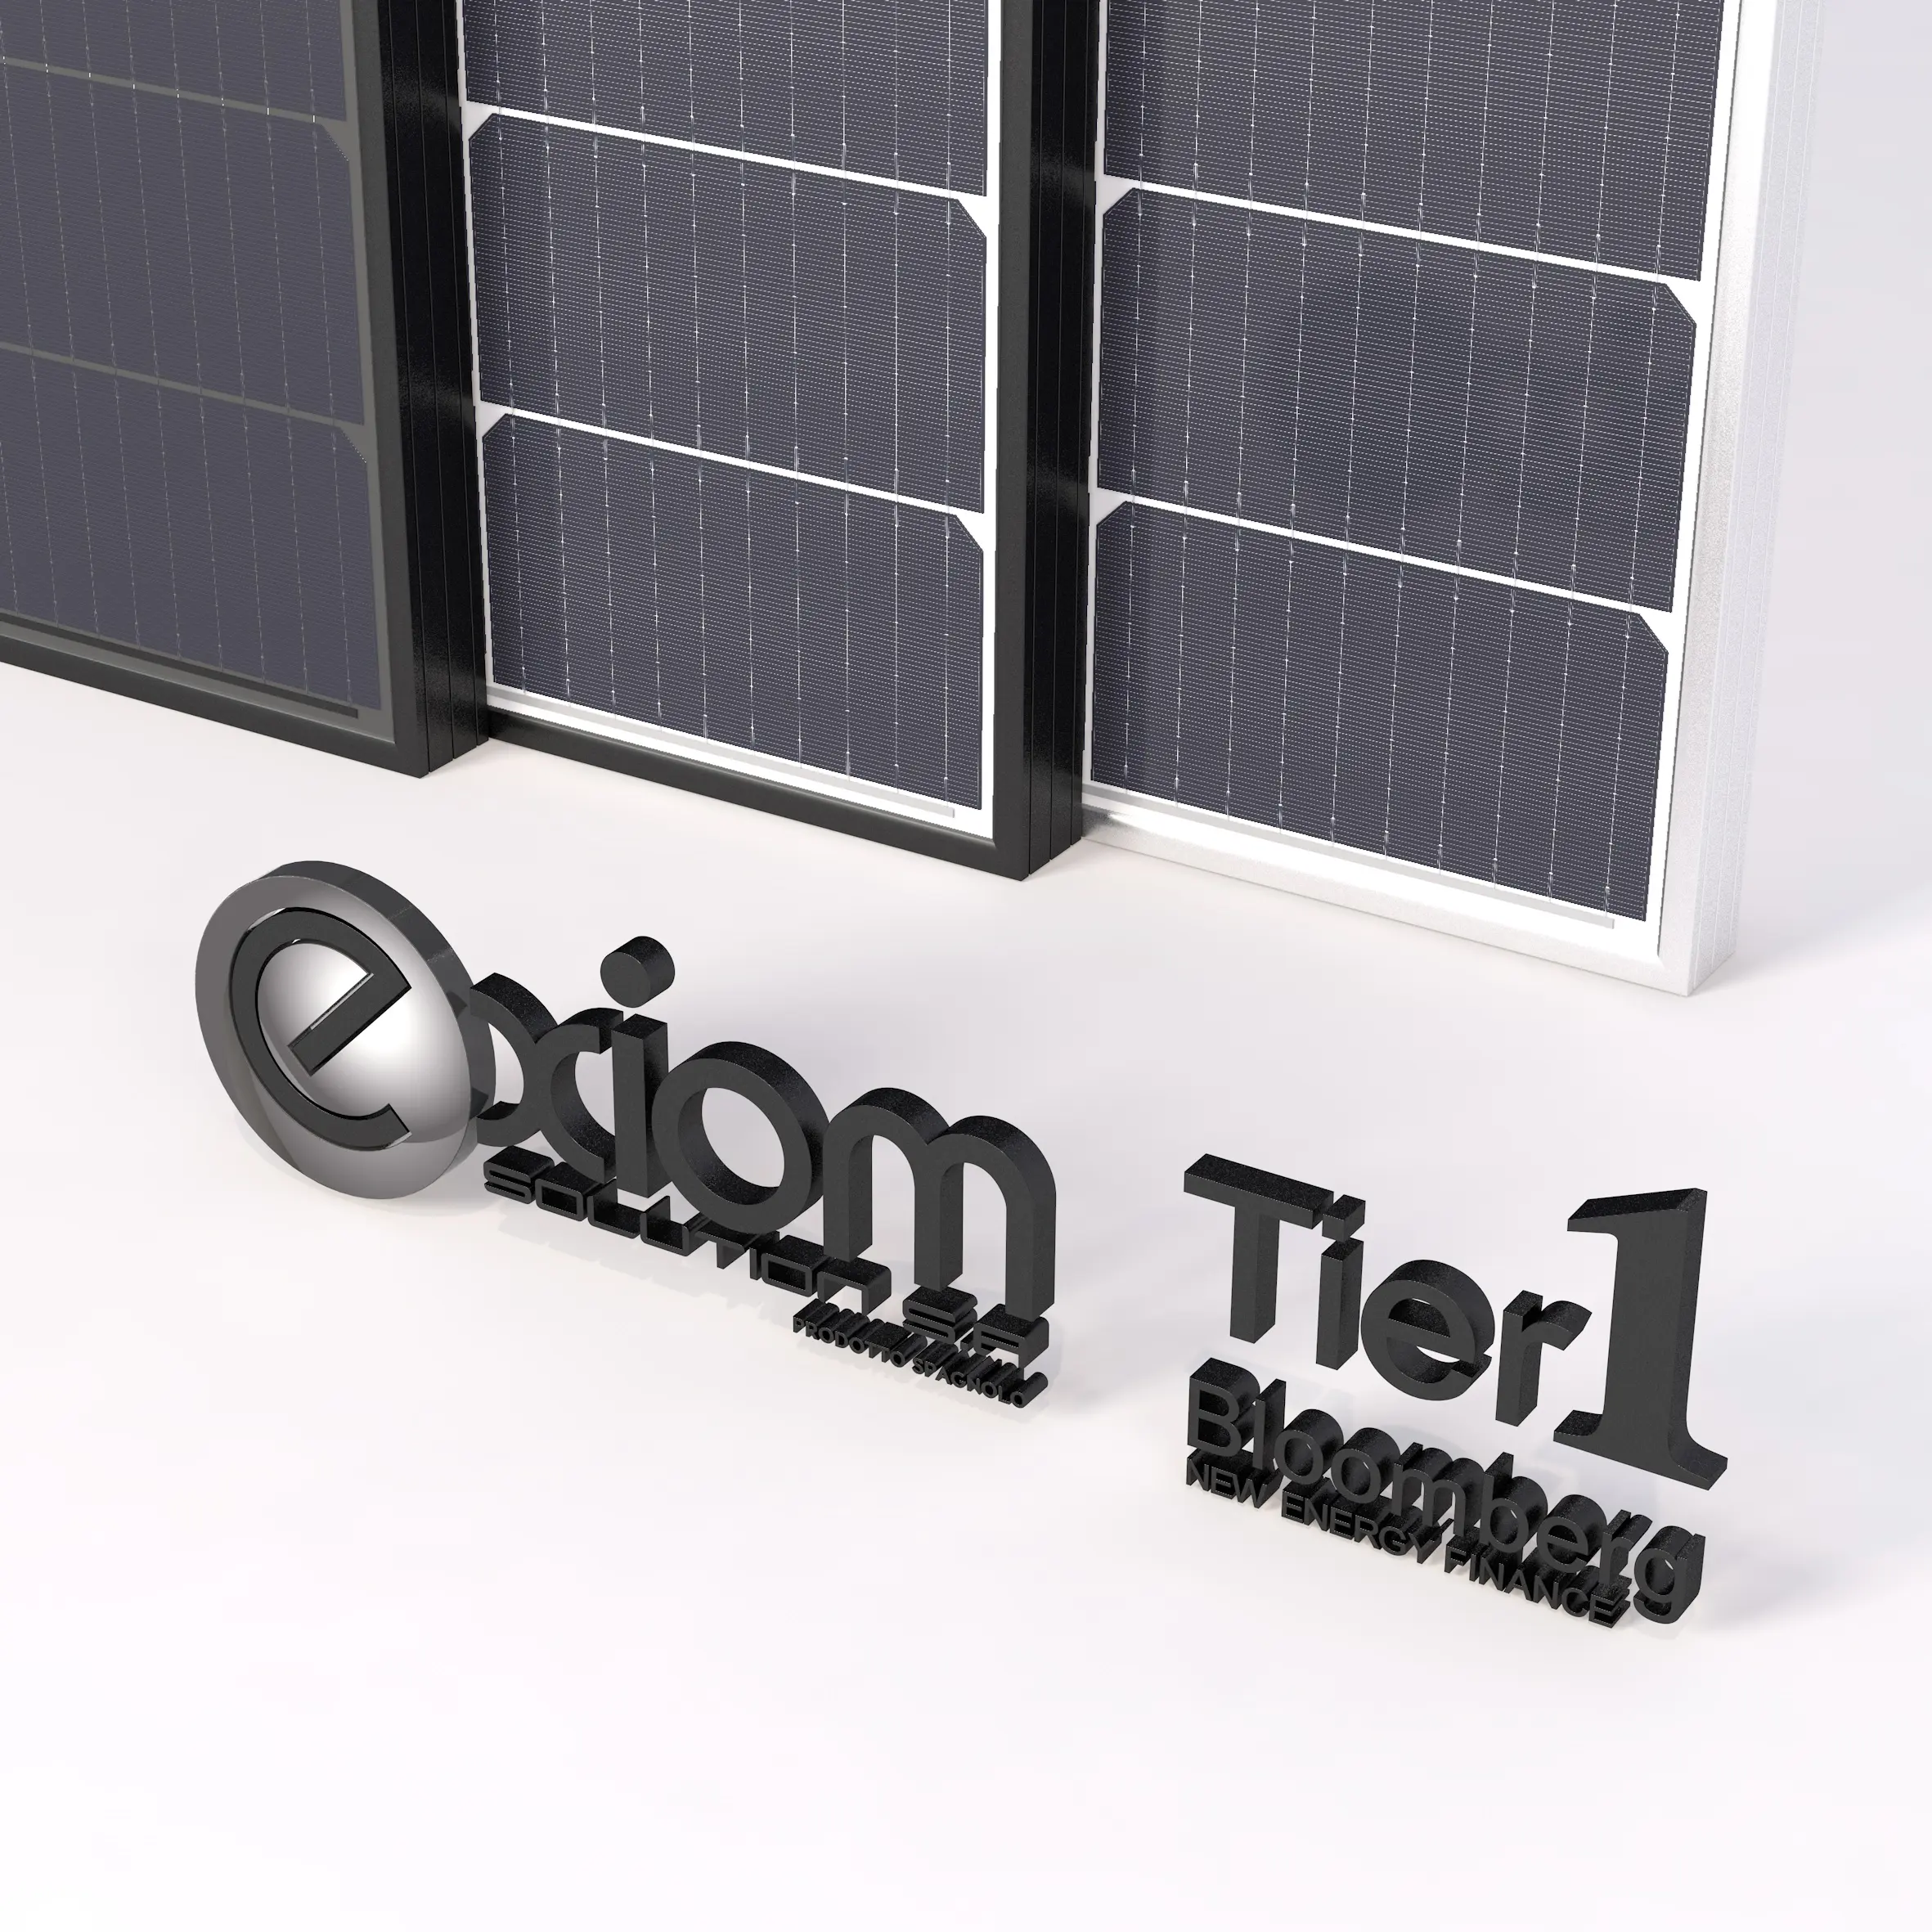 Exiom 450w 480w 500w 550w太陽光発電モノラルハーフセルソーラーパネル1000w価格600ワットPVモジュール